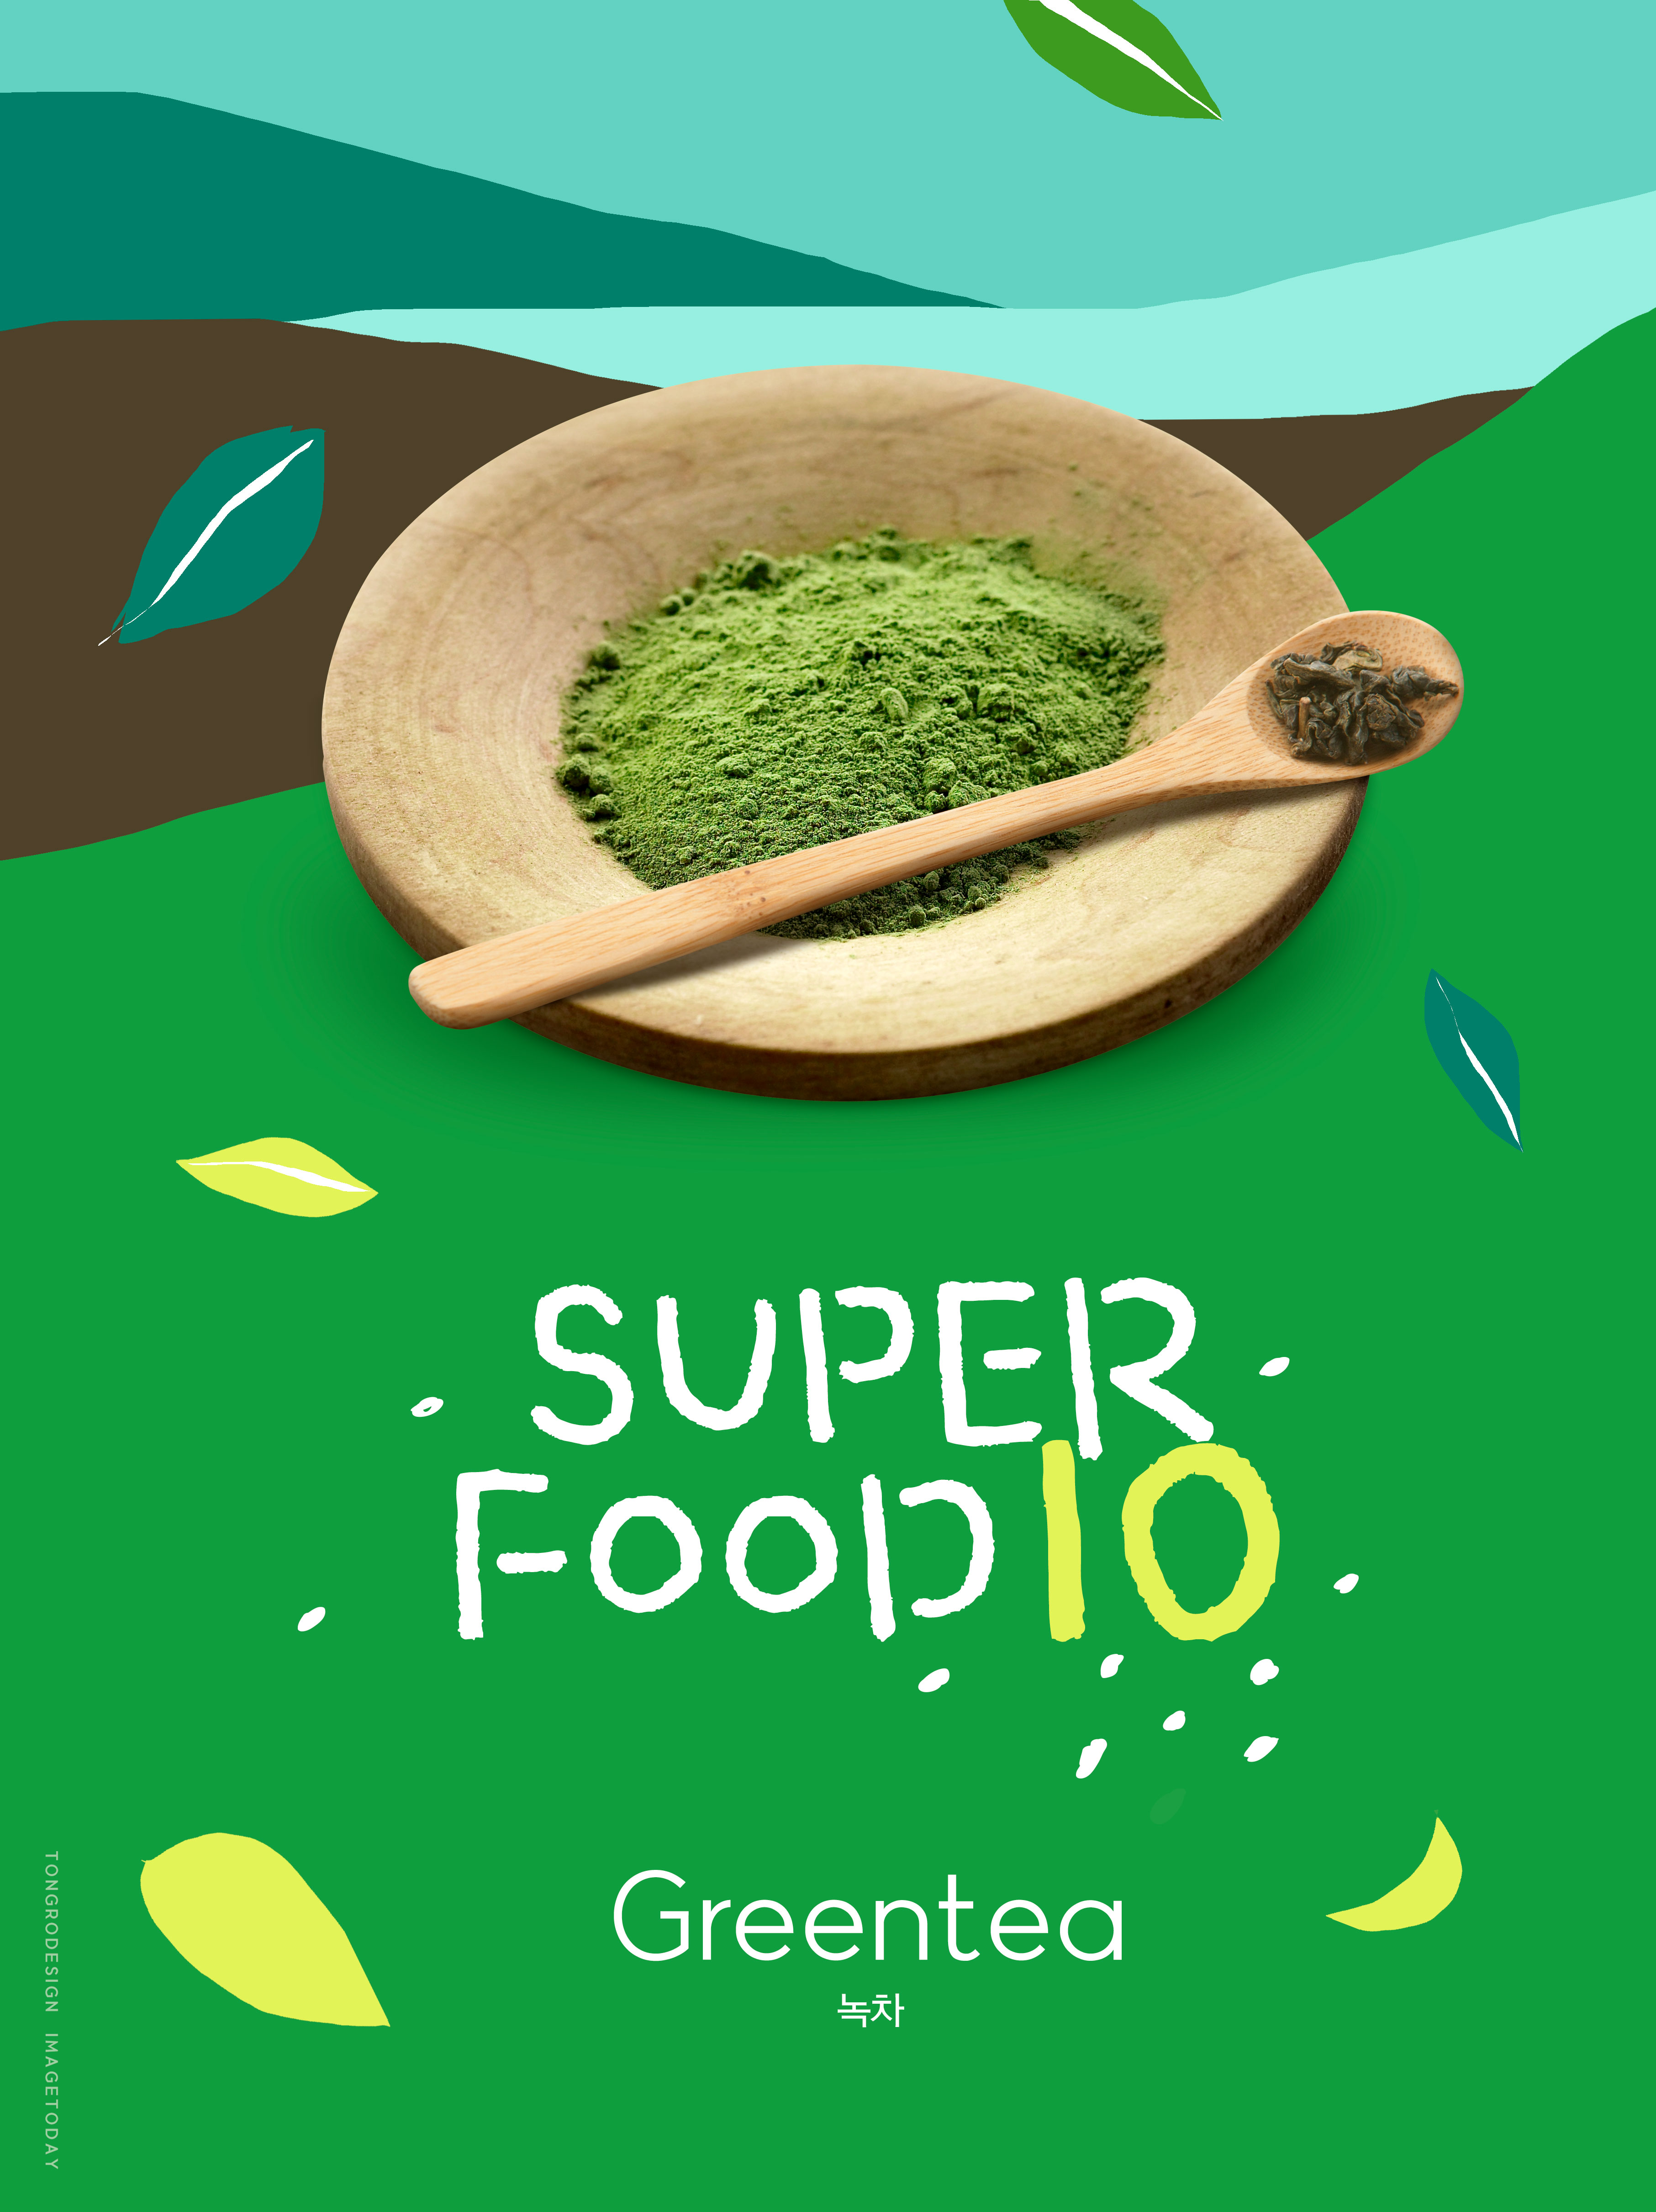 绿茶粉茶饮食品宣传广告海报[PSD]插图